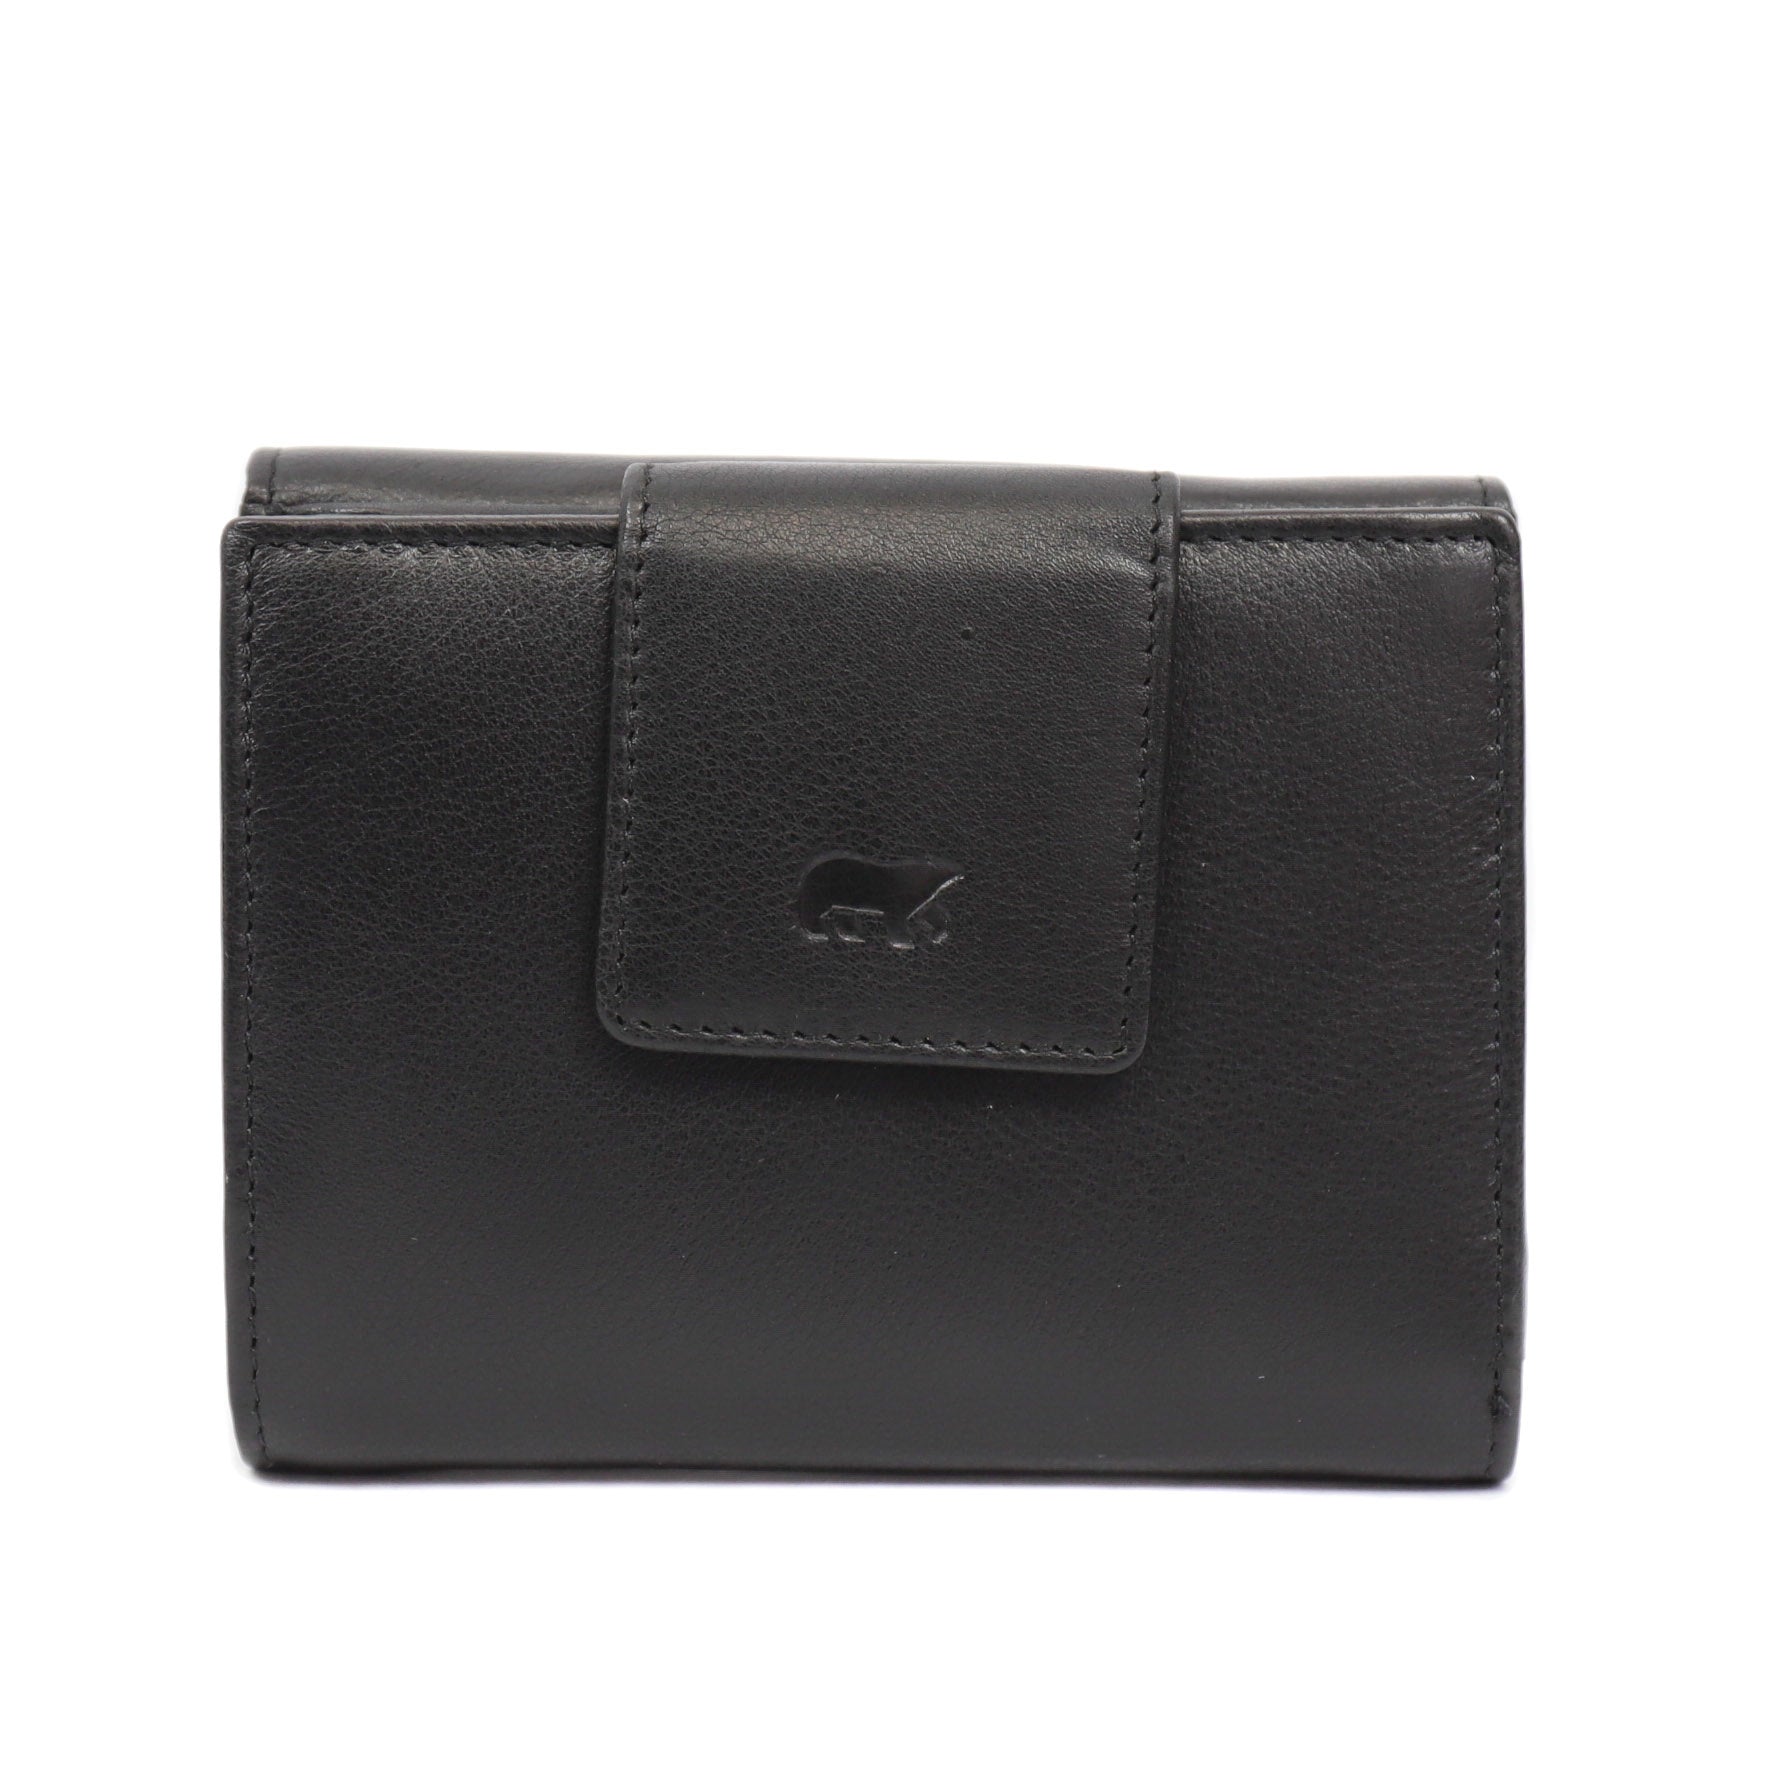 Wallet 'Jill' black - FR 8116